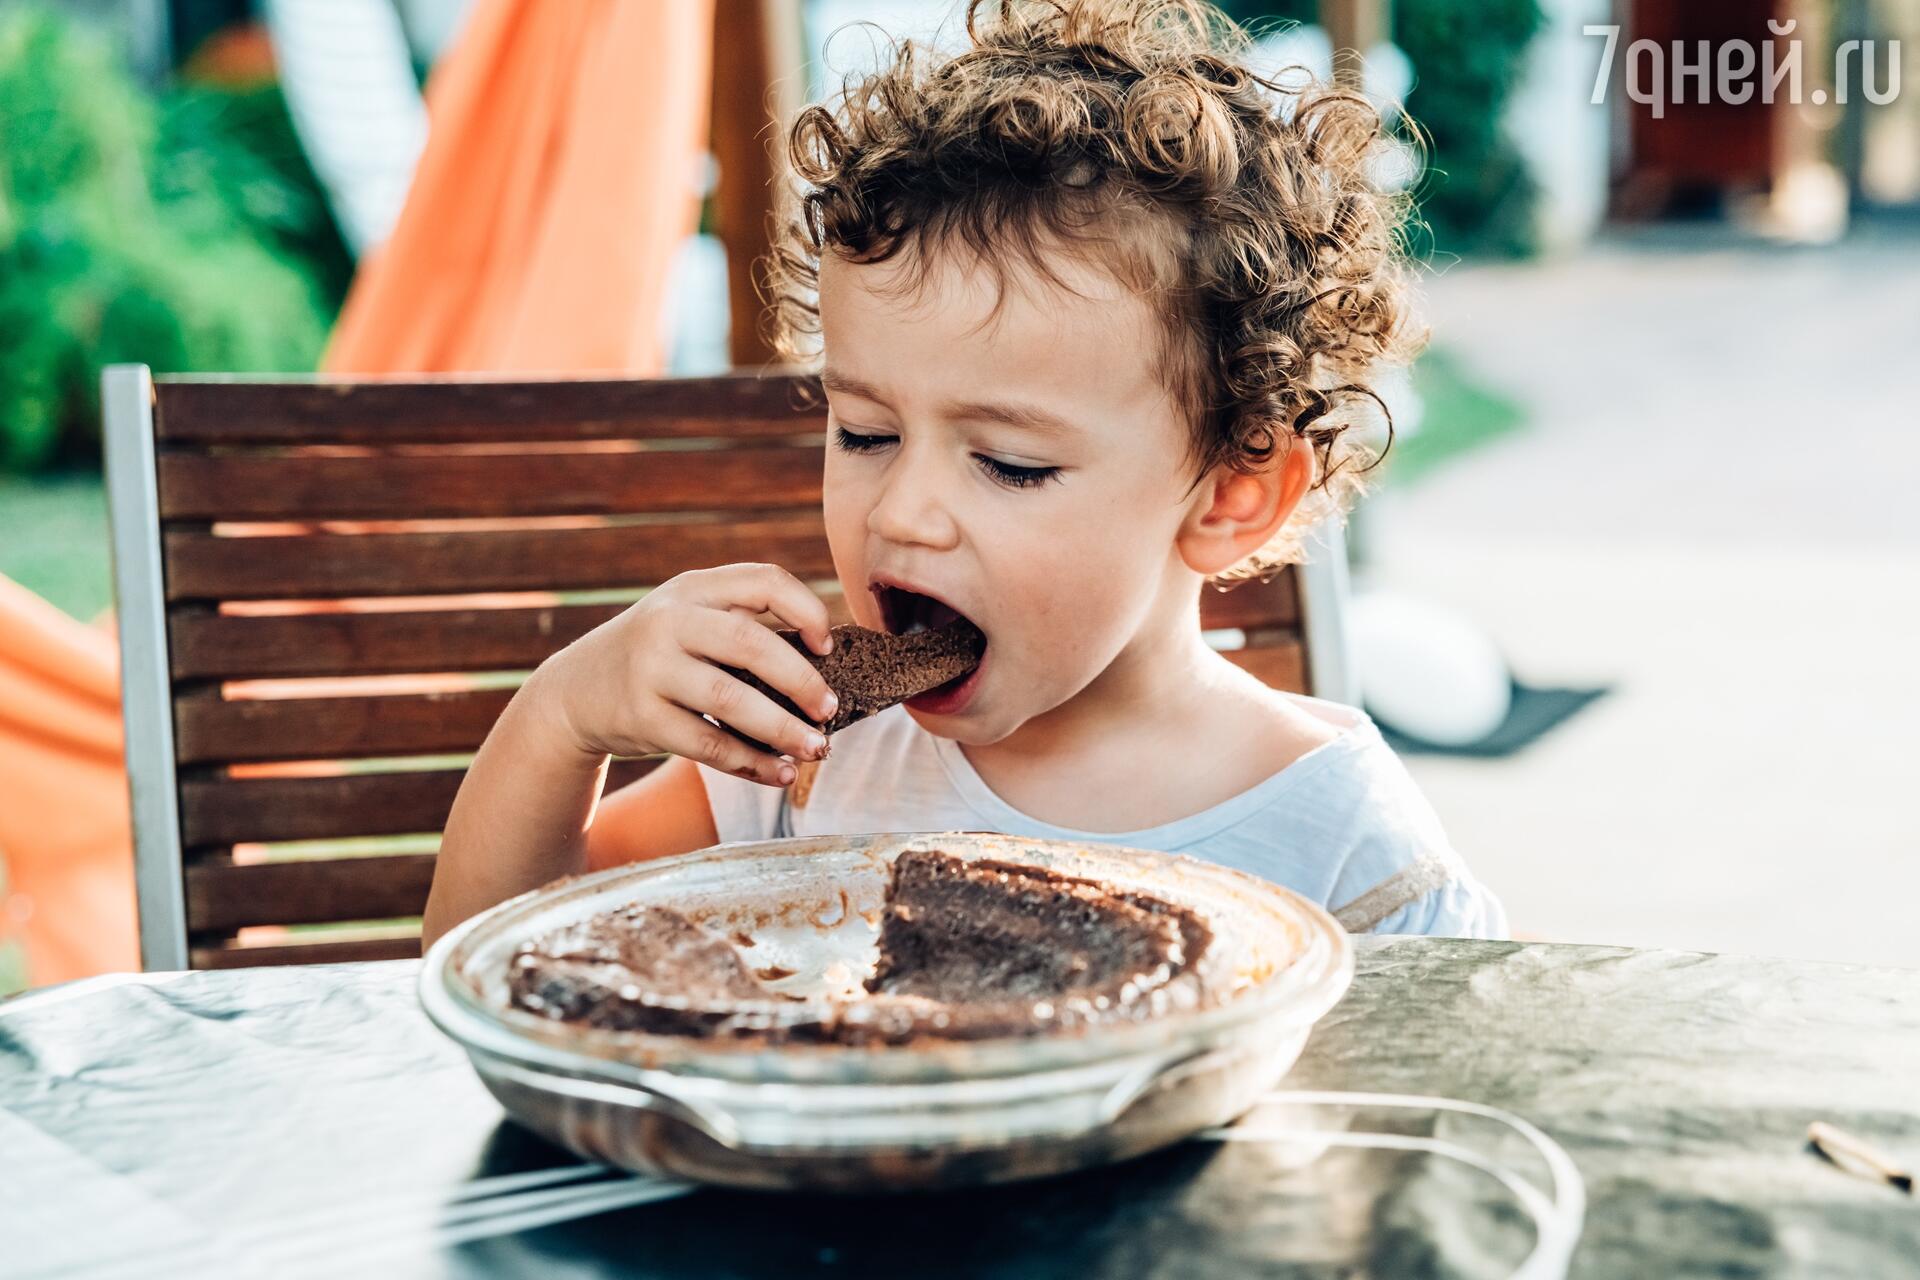 Портятся ли зубы от сладкого и как снизить риск кариеса у ребенка